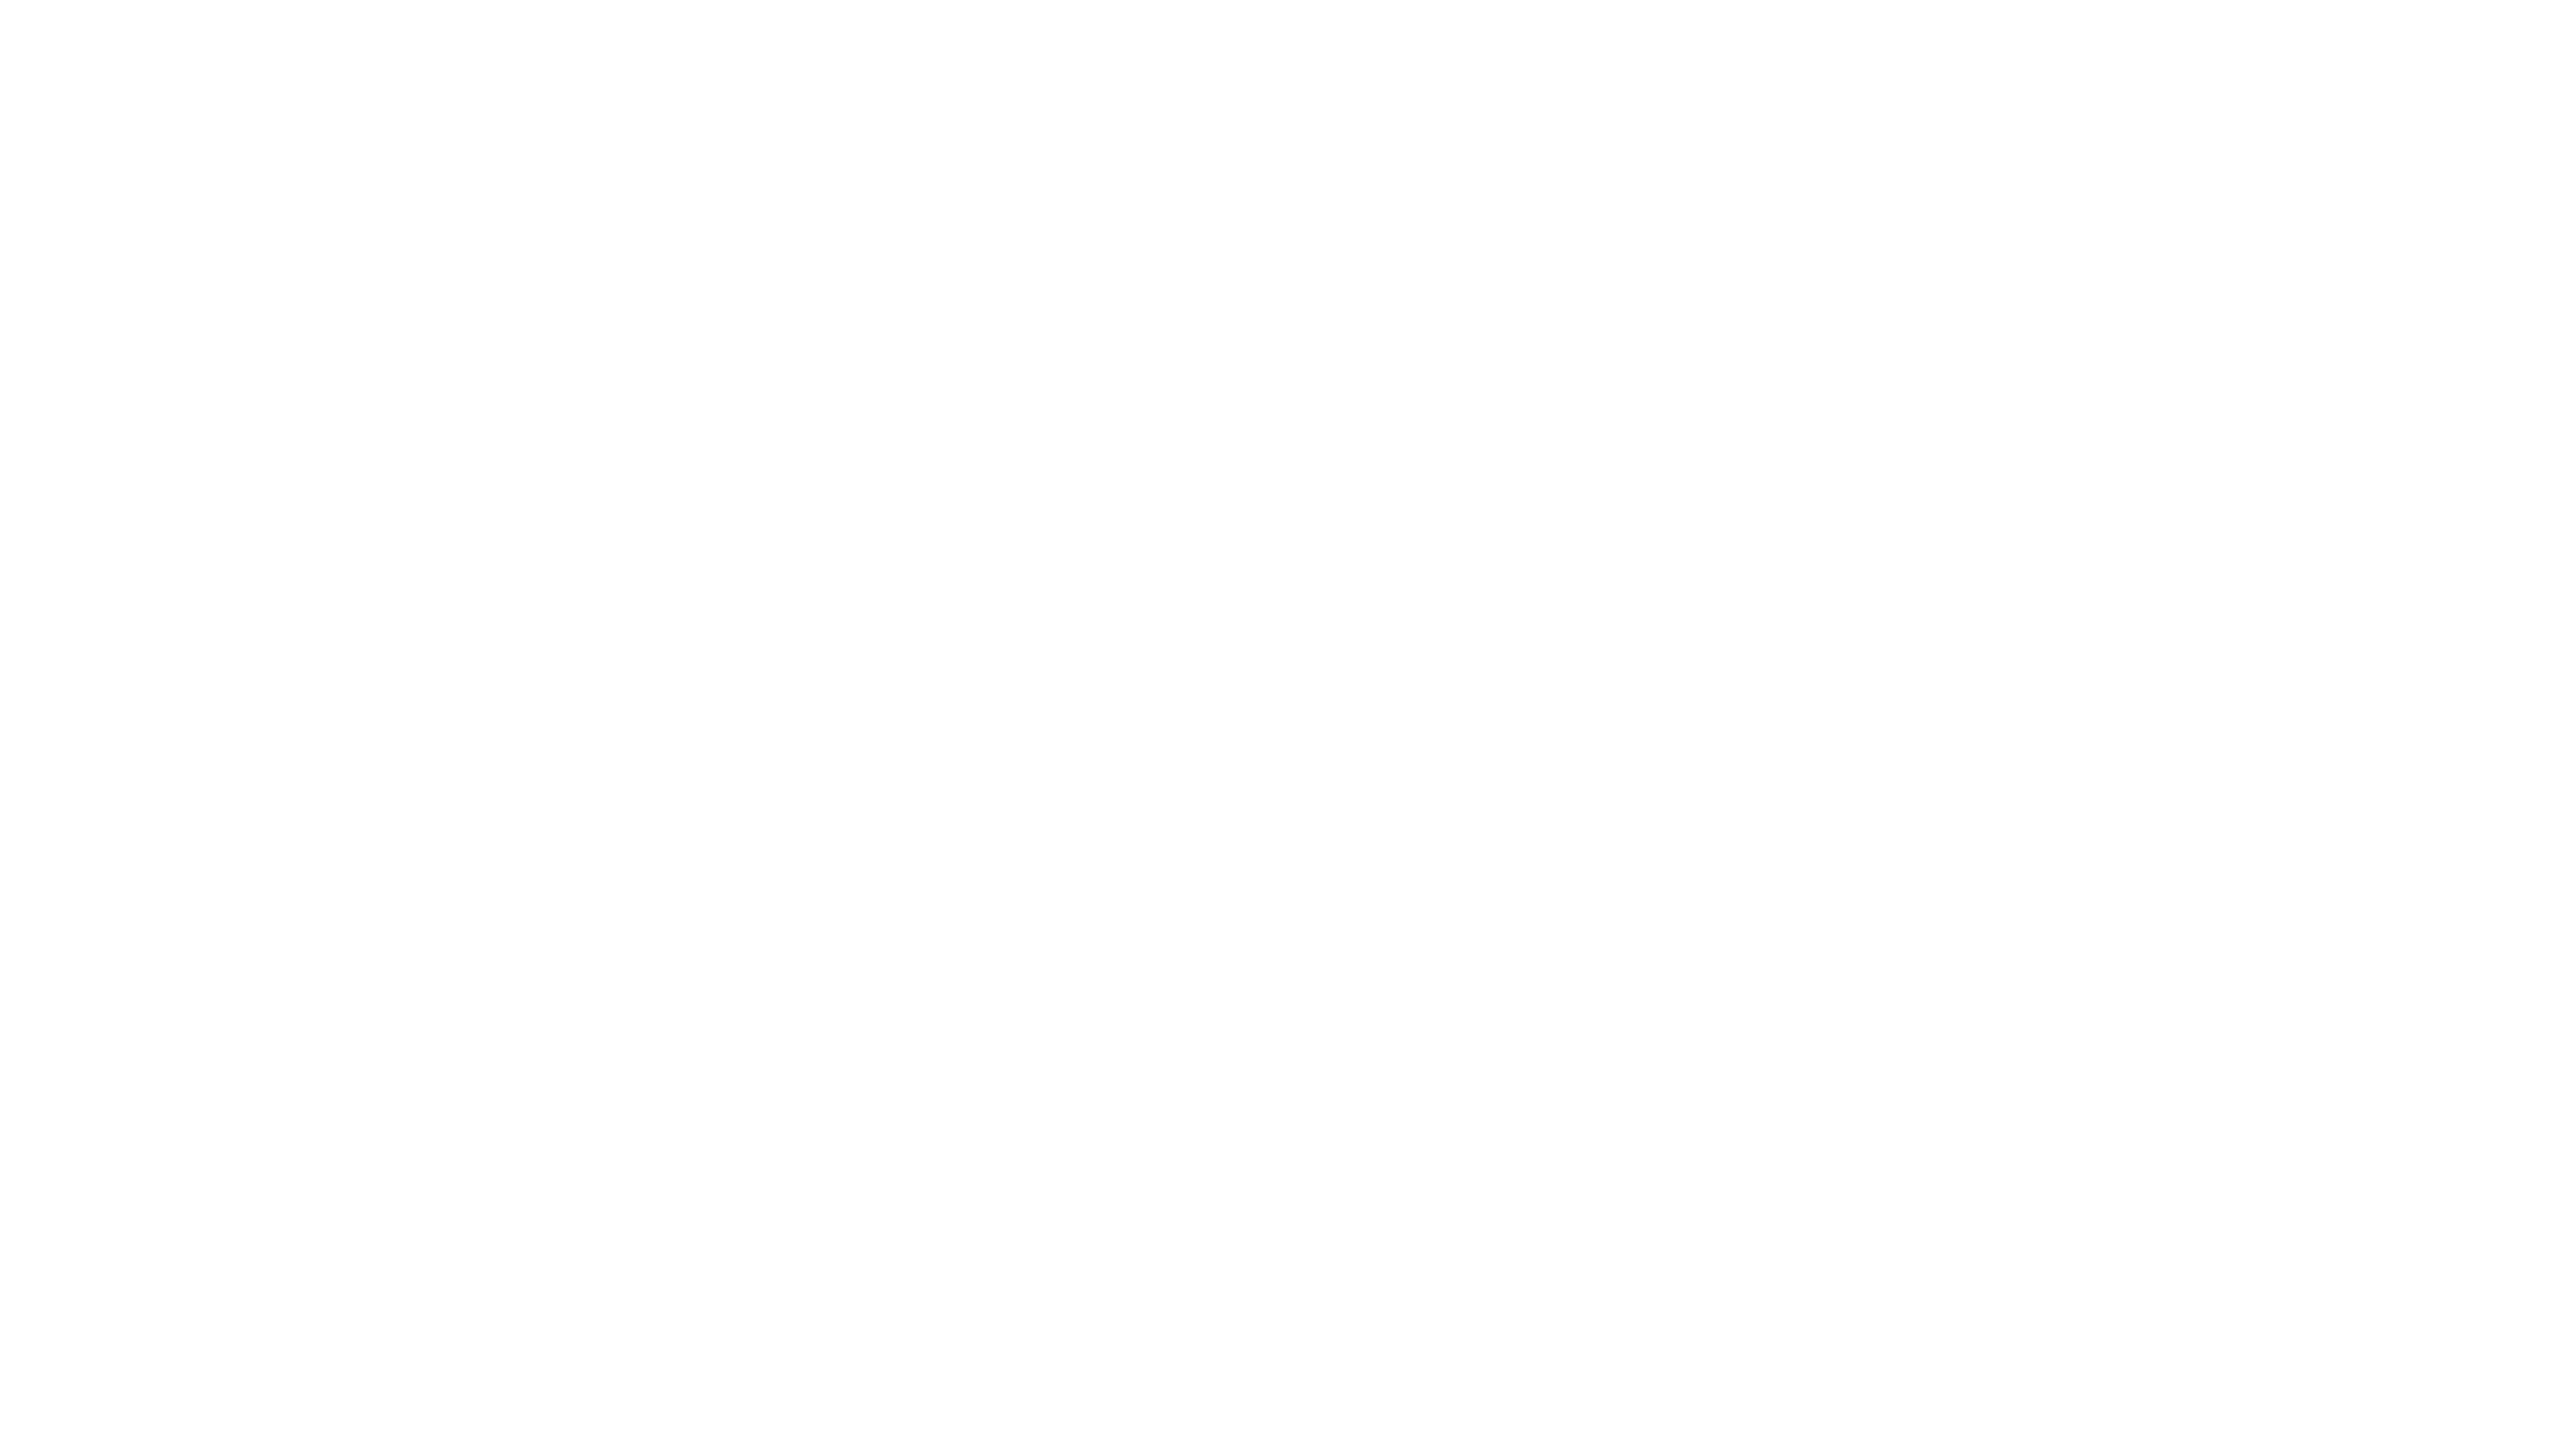 Fiber. Build the backbone for the future.